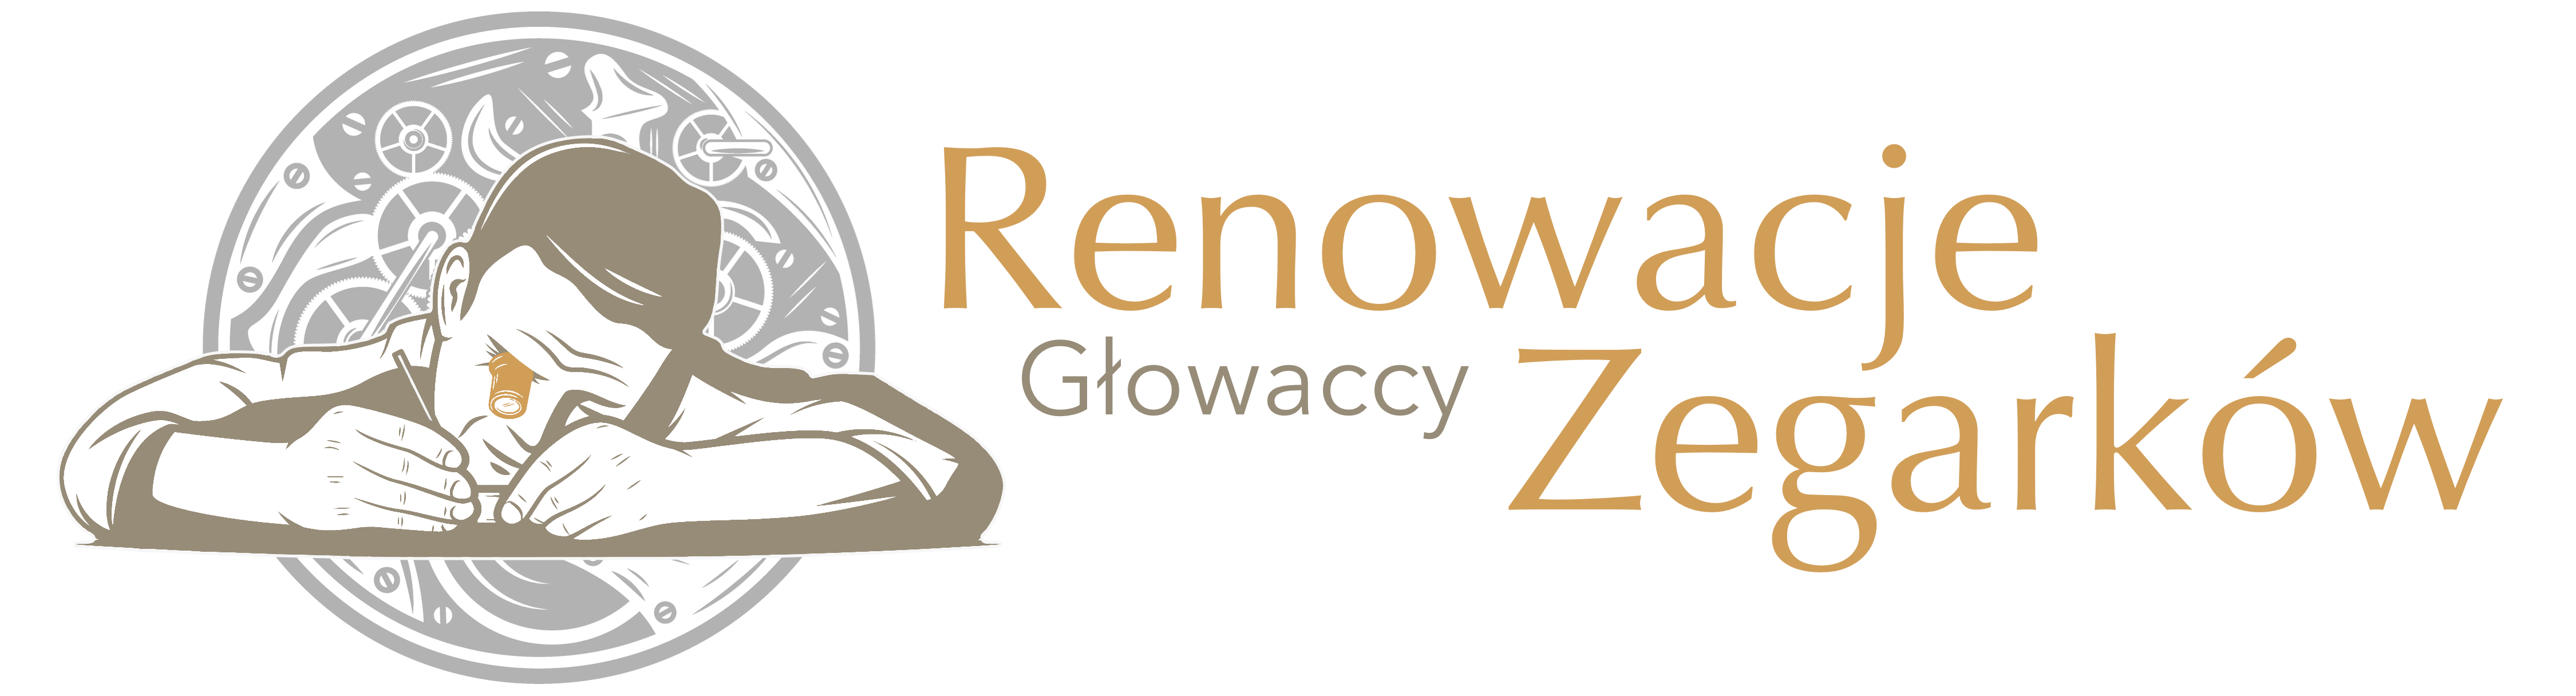 Renowacje Zegarków by Głowaccy